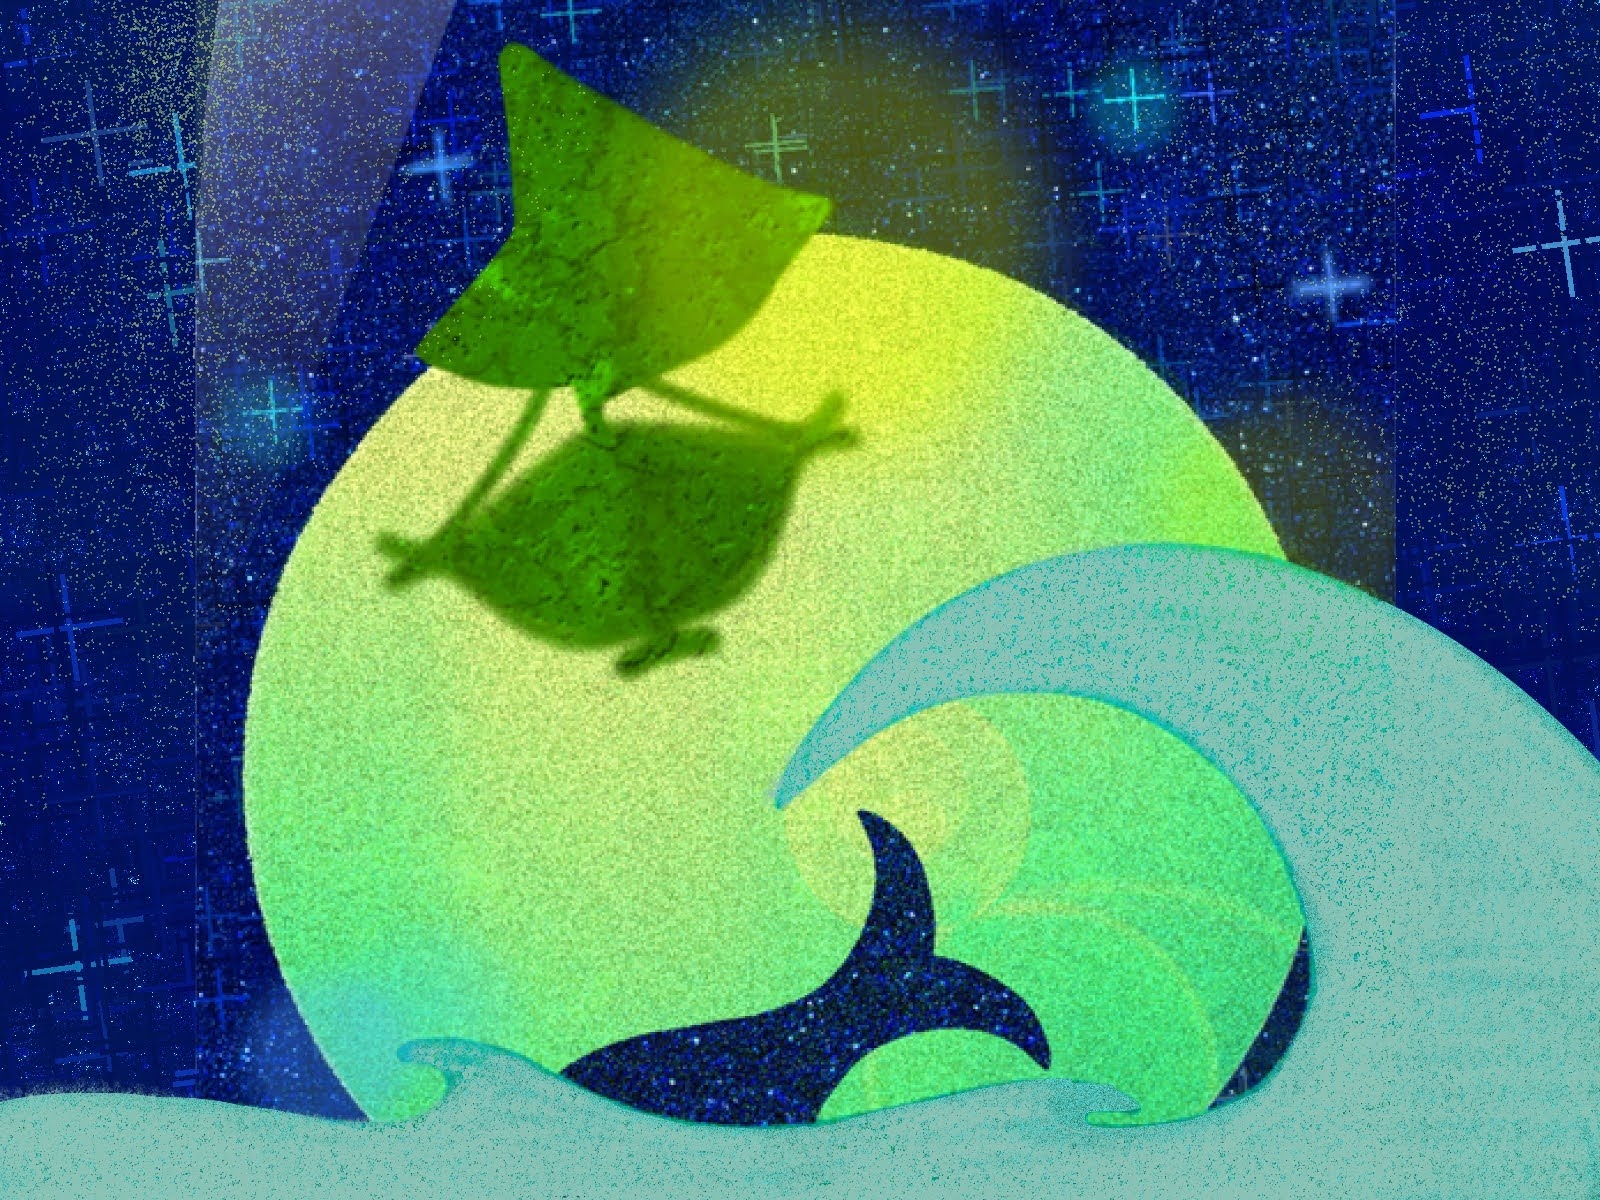 花みずき Al Twitter イラストac 天体観測 月夜と飛行船 幻想的なイラスト 雨と虹のイラスト Dlありがとうございます たくさん使っていただけたら嬉しいです T Co Zibppuuapu T Co Zz05kjtmpt Twitter